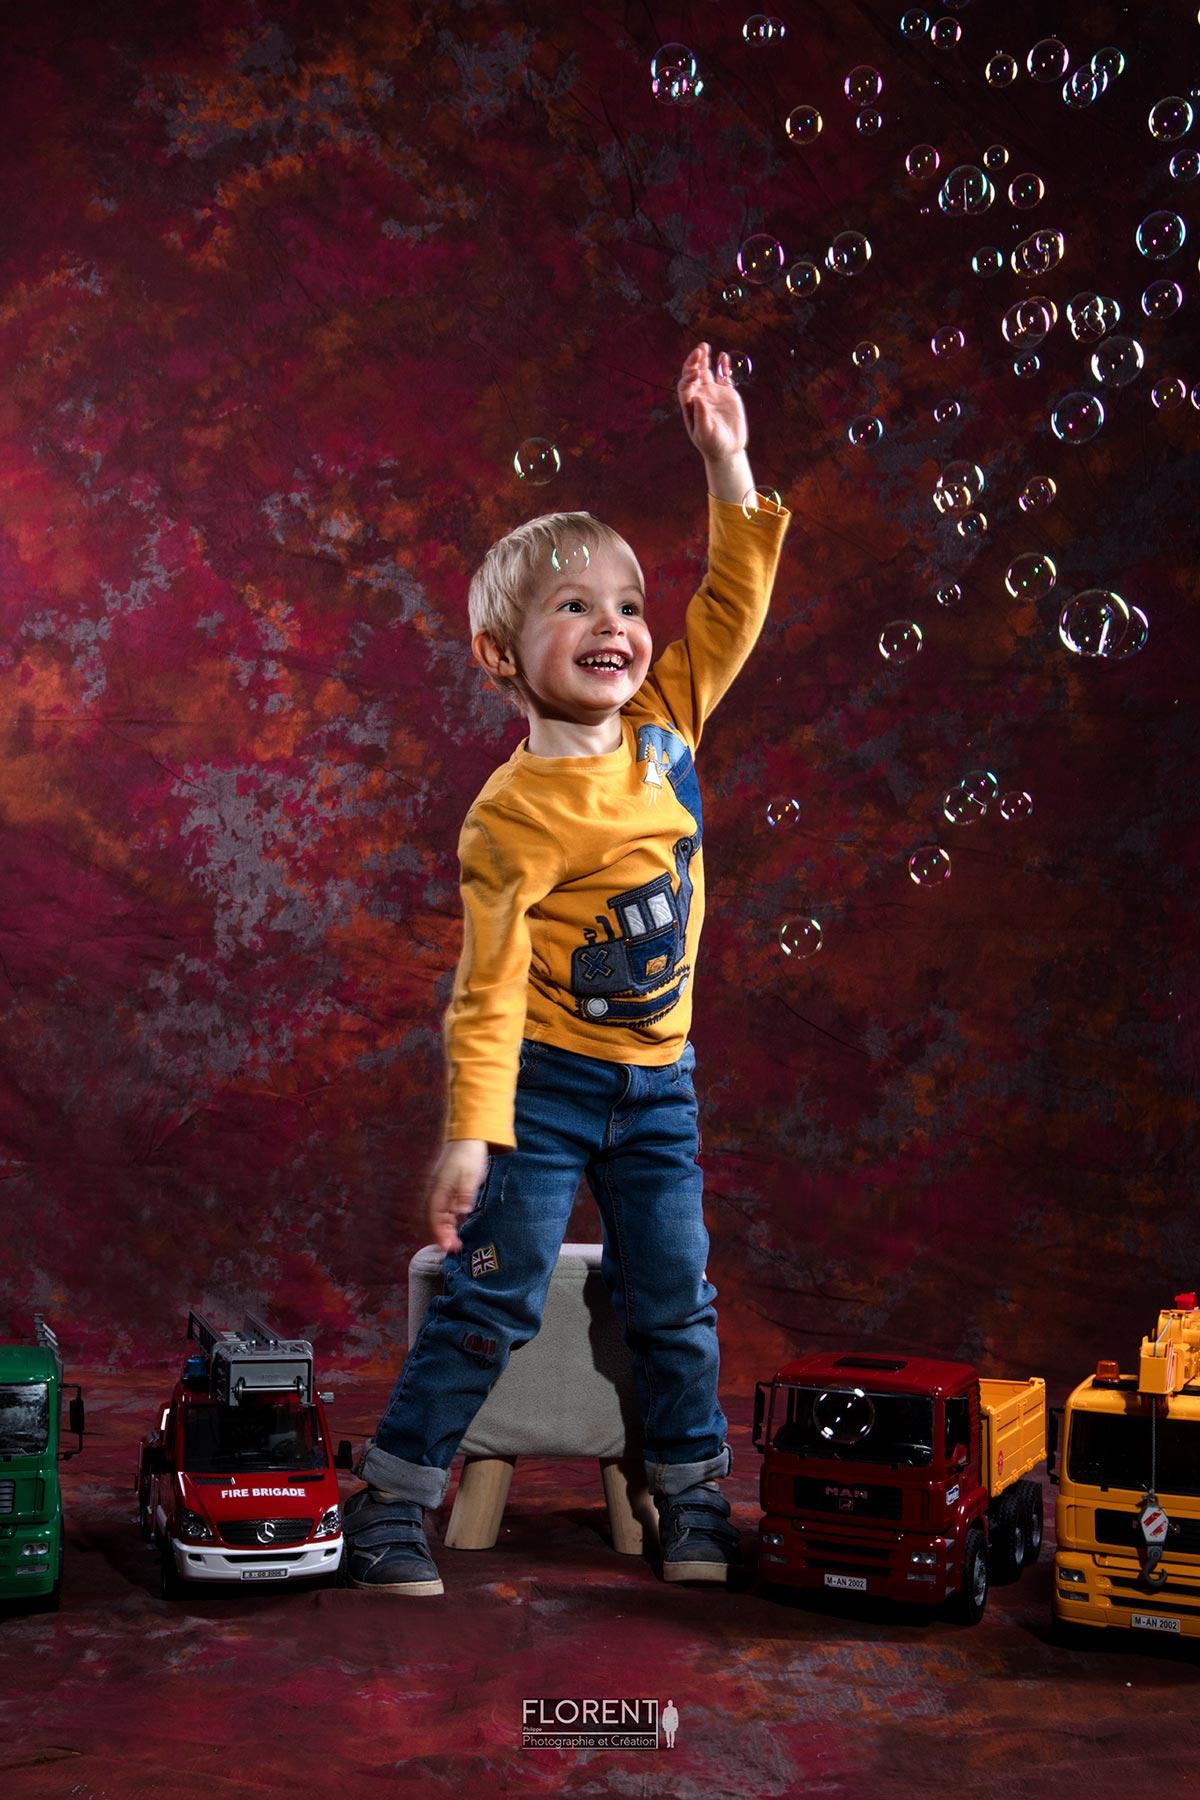 enfant au mileu des jouets joue avec des bulles souriant florent photo boulogne sur mer lille le touquet paris calais amiens